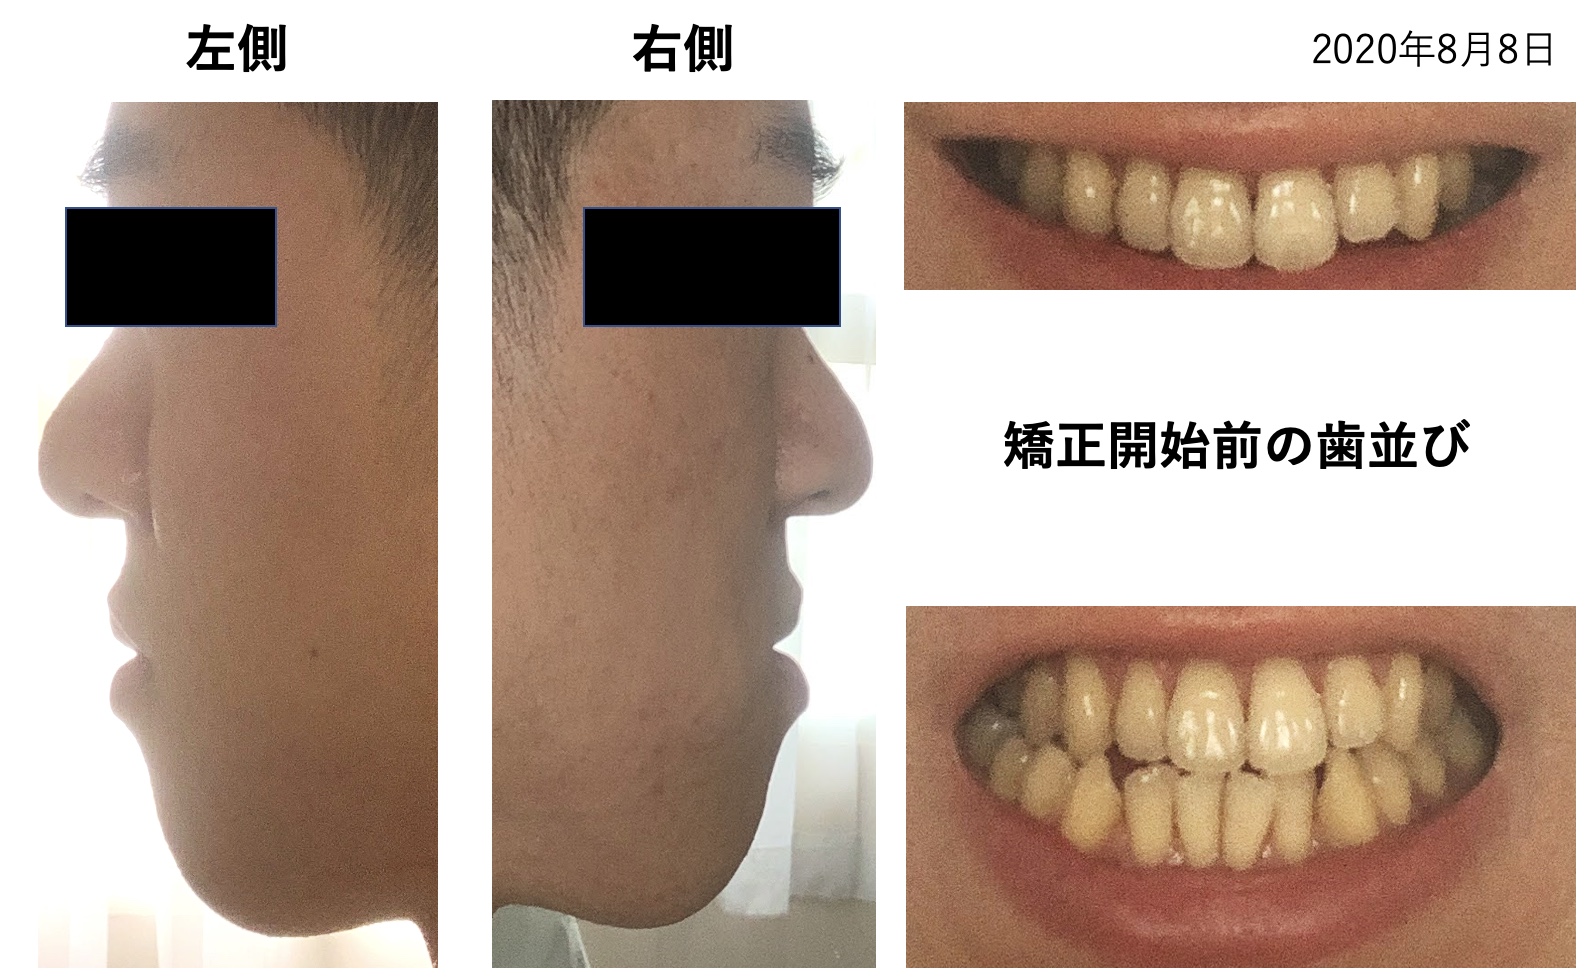 歯列矯正を１年間やった経過と歯並びの変化 大人の受け口は外科手術なしで治せるのか Tatsu04a